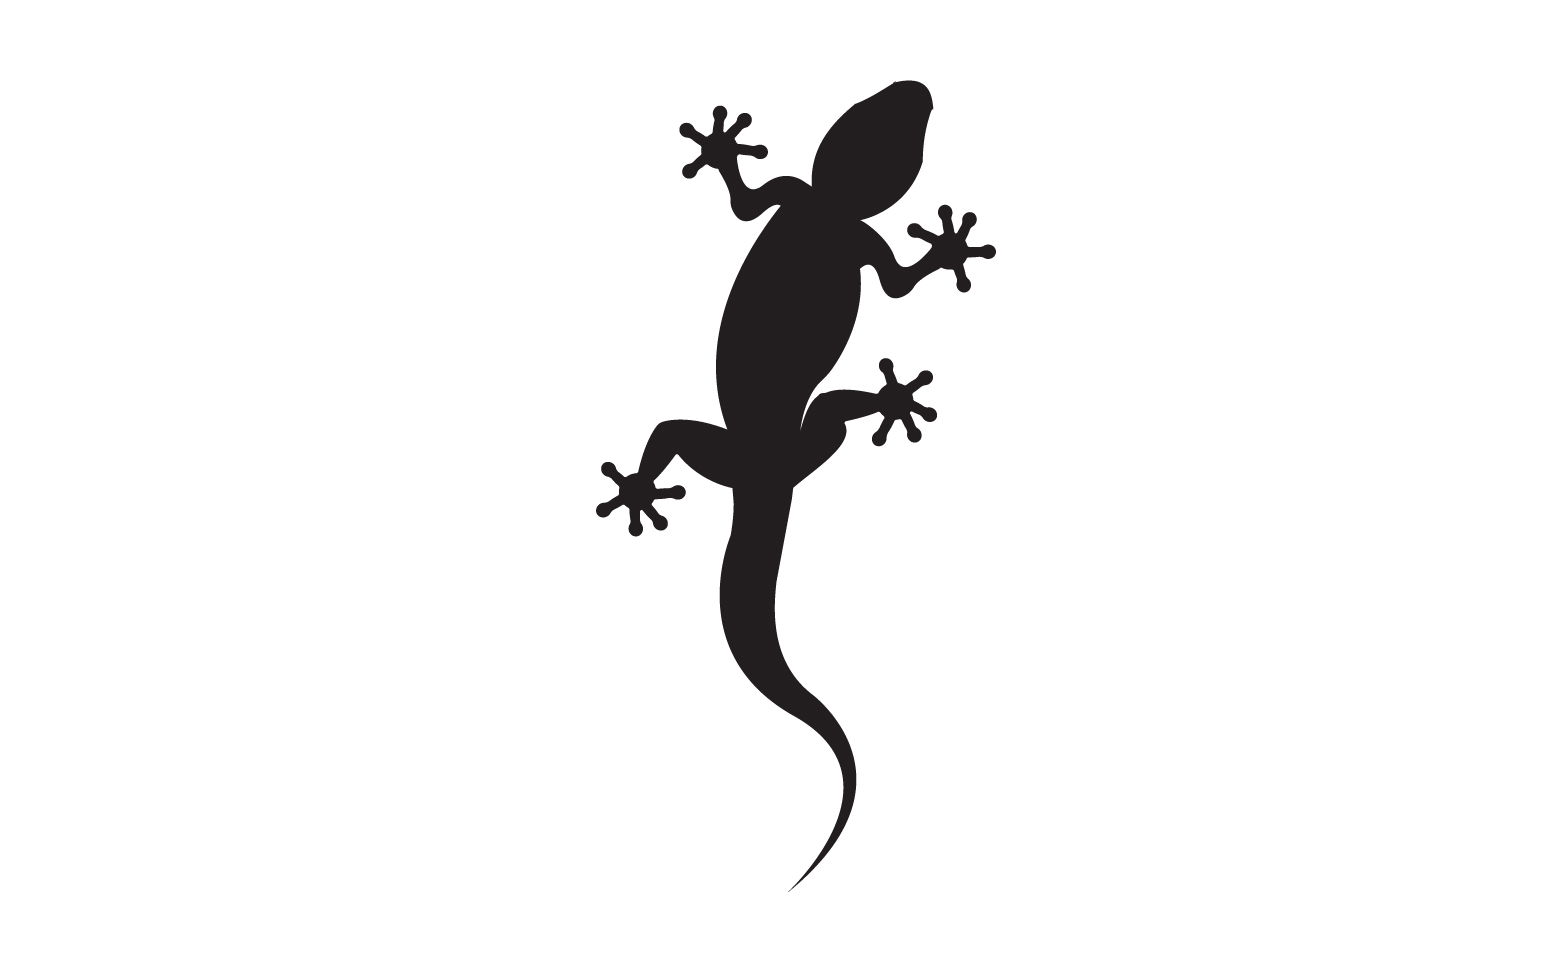 Lizard chameleon home lizard logo v8